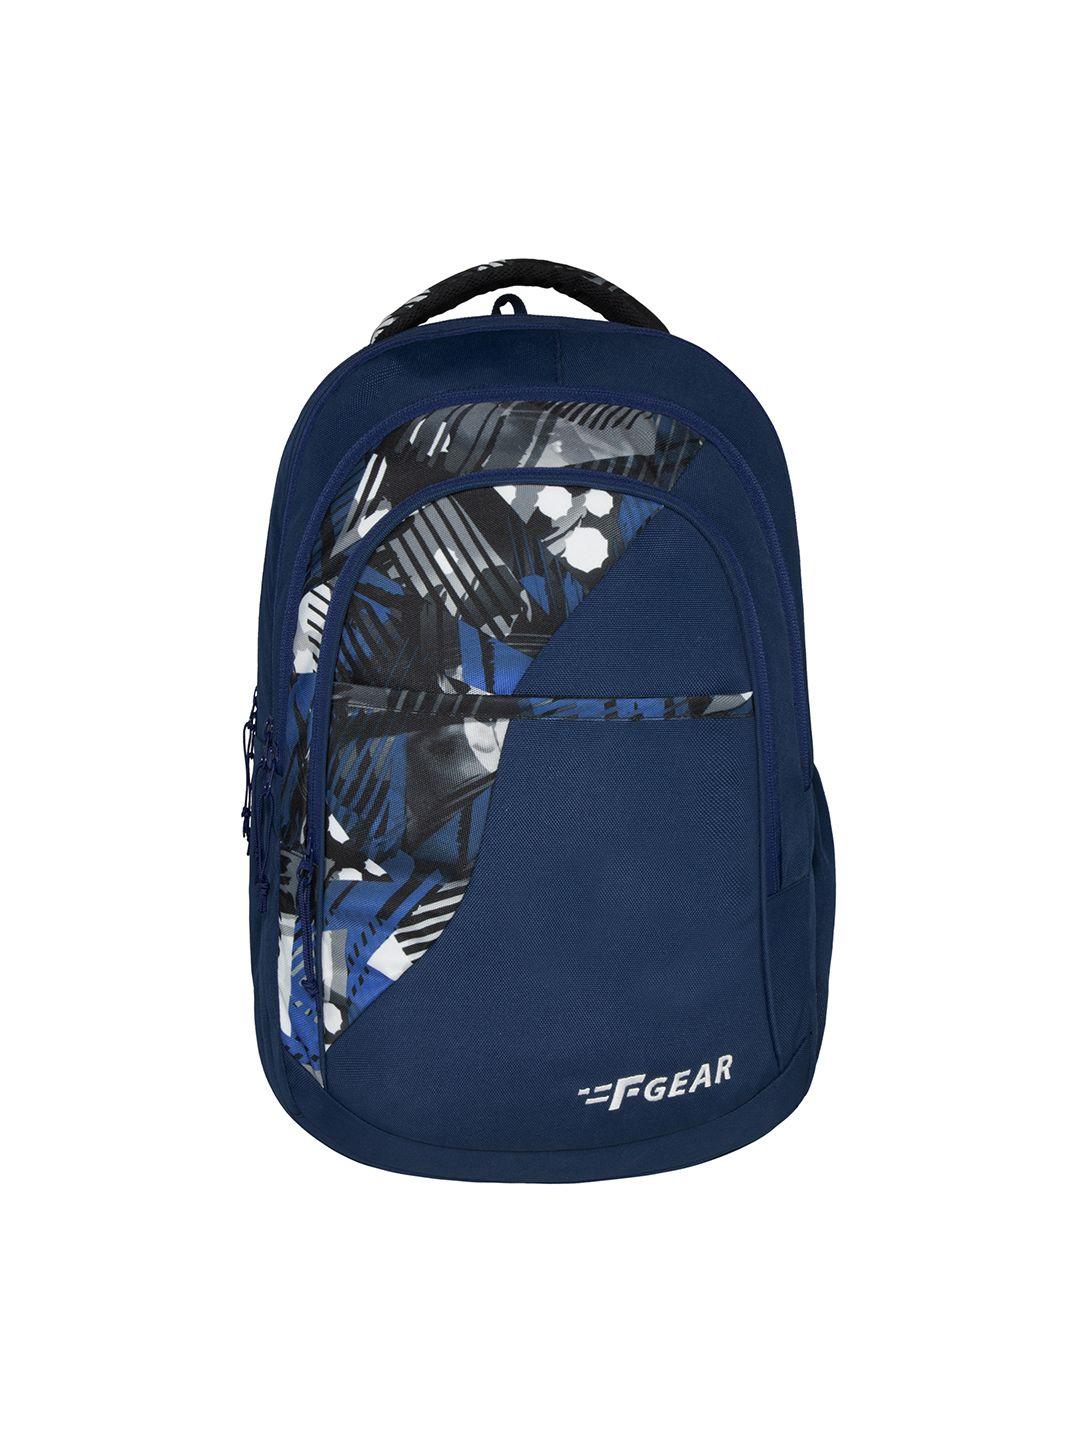 f gear printed water resistant backpack